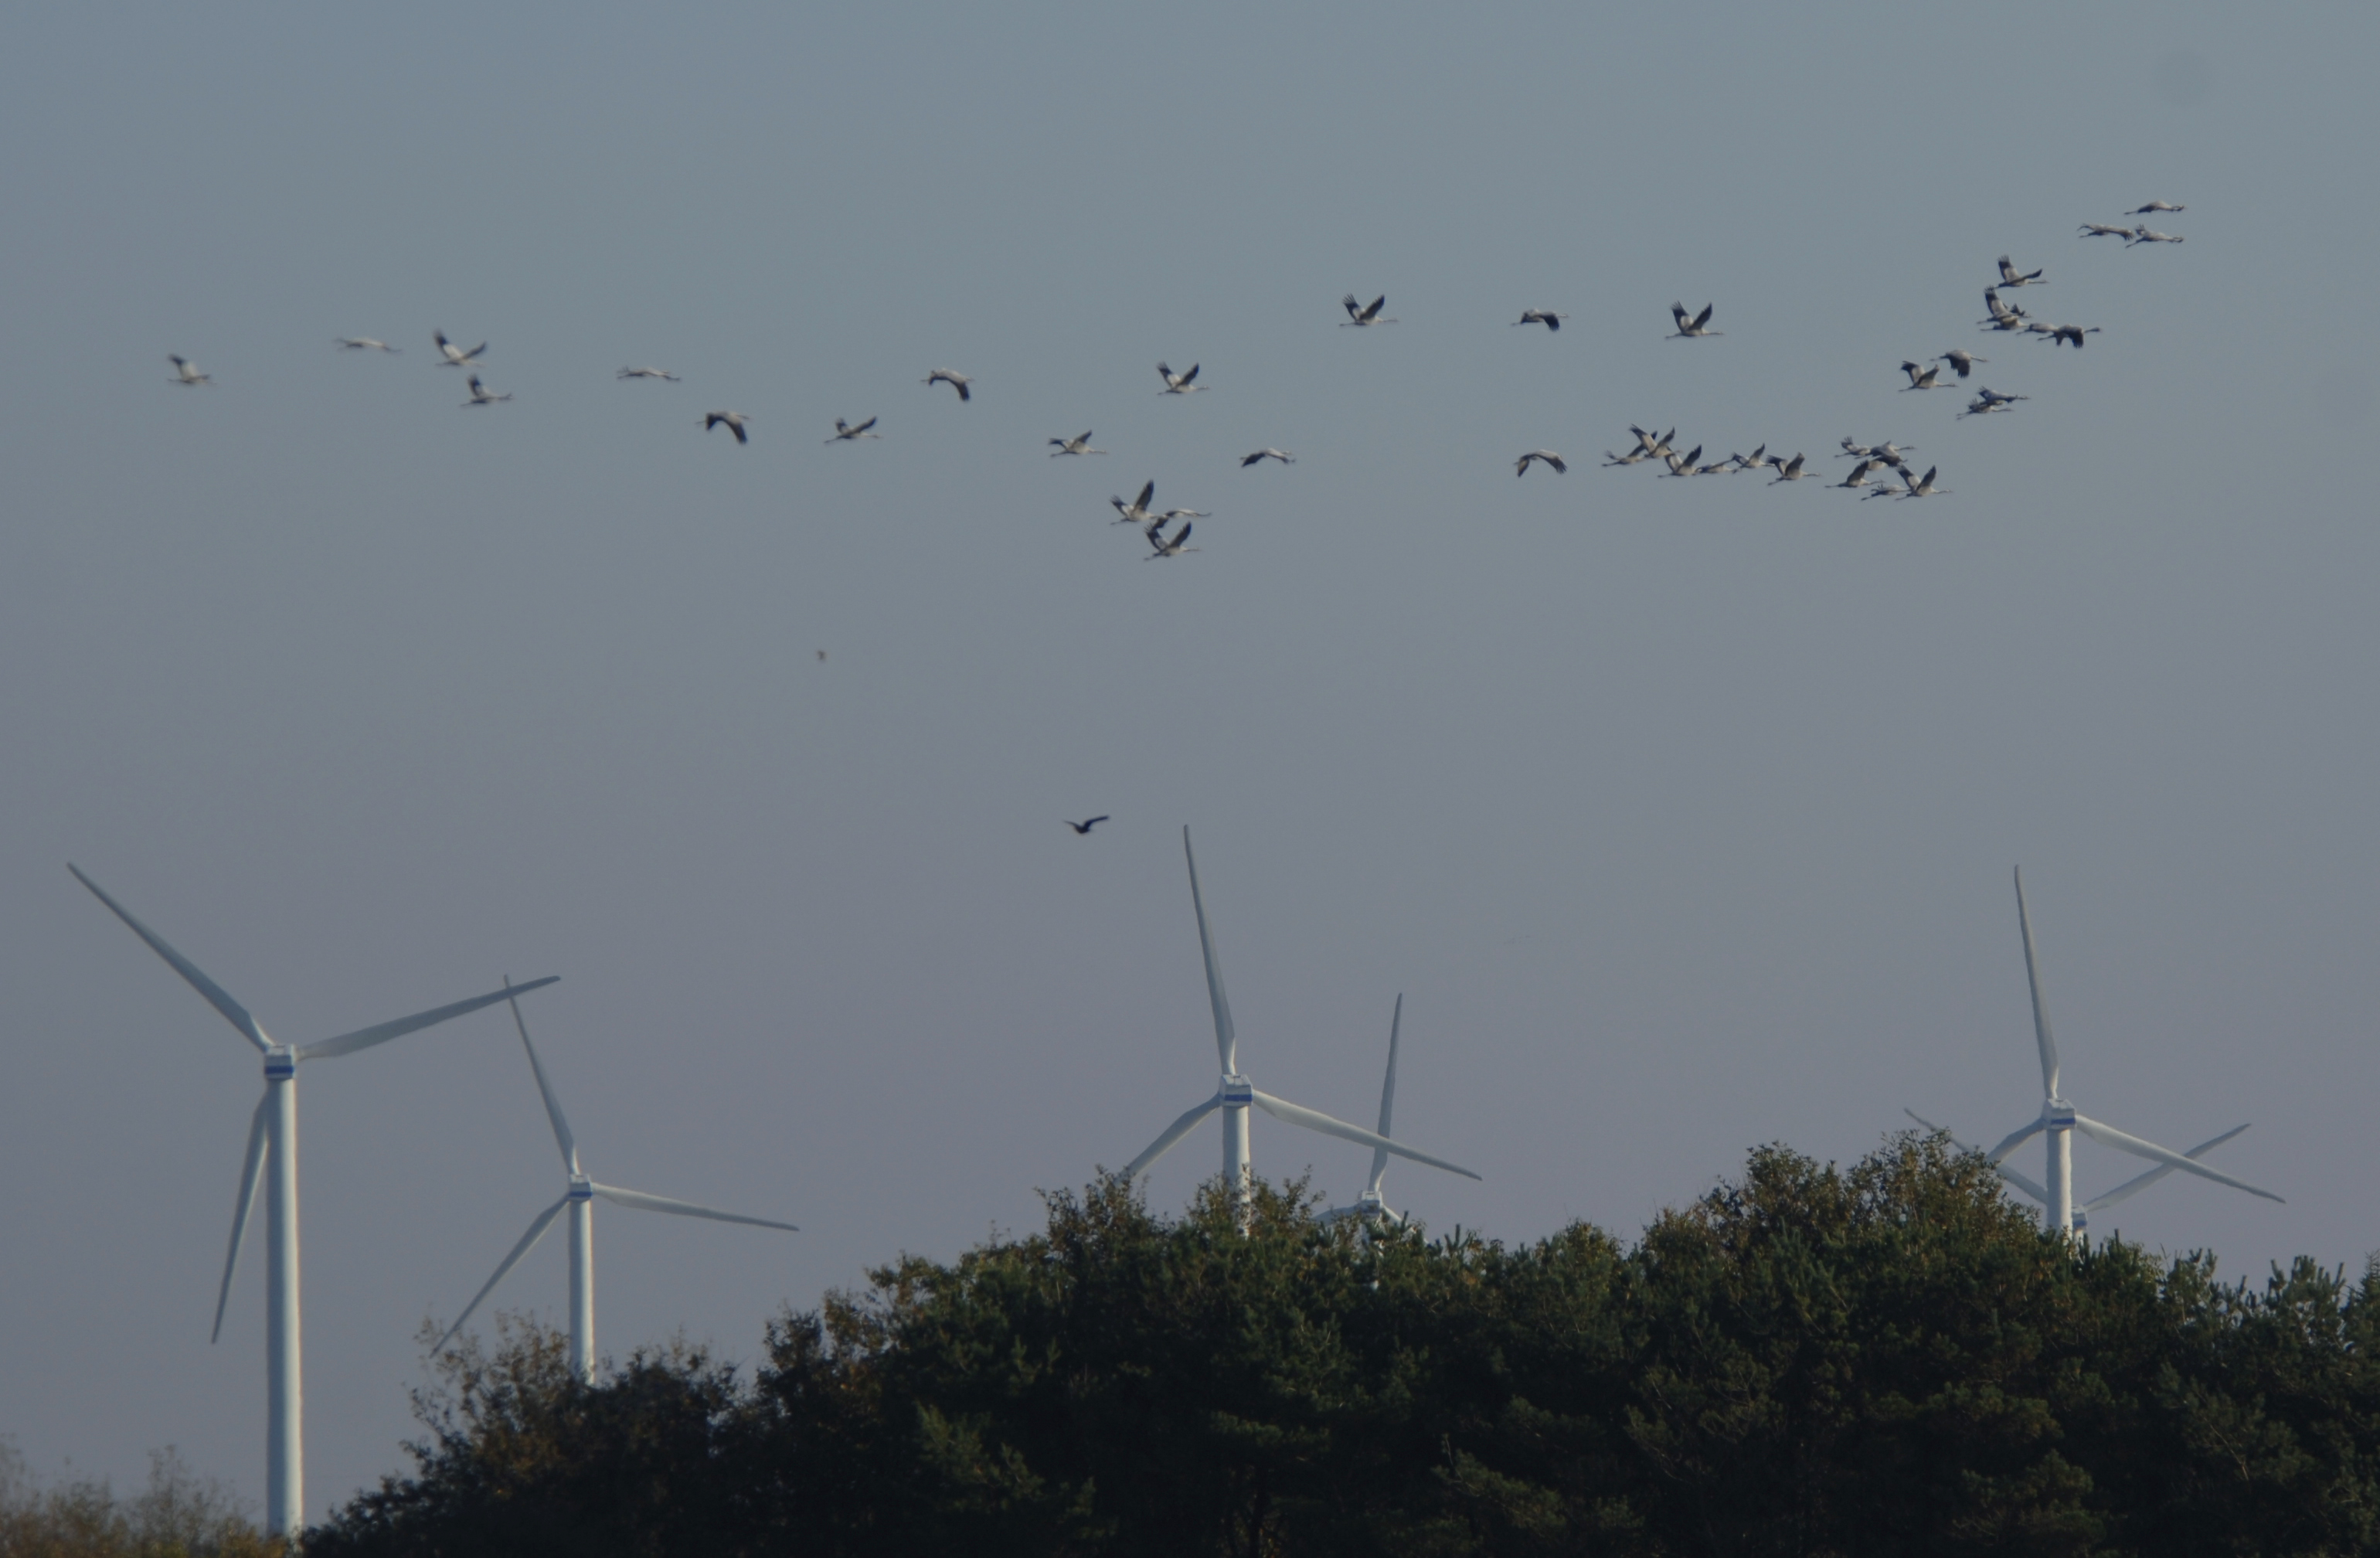  Traner over vindmoller store fugle er i farezonen naer vindmolleparker foto Jan Skriver